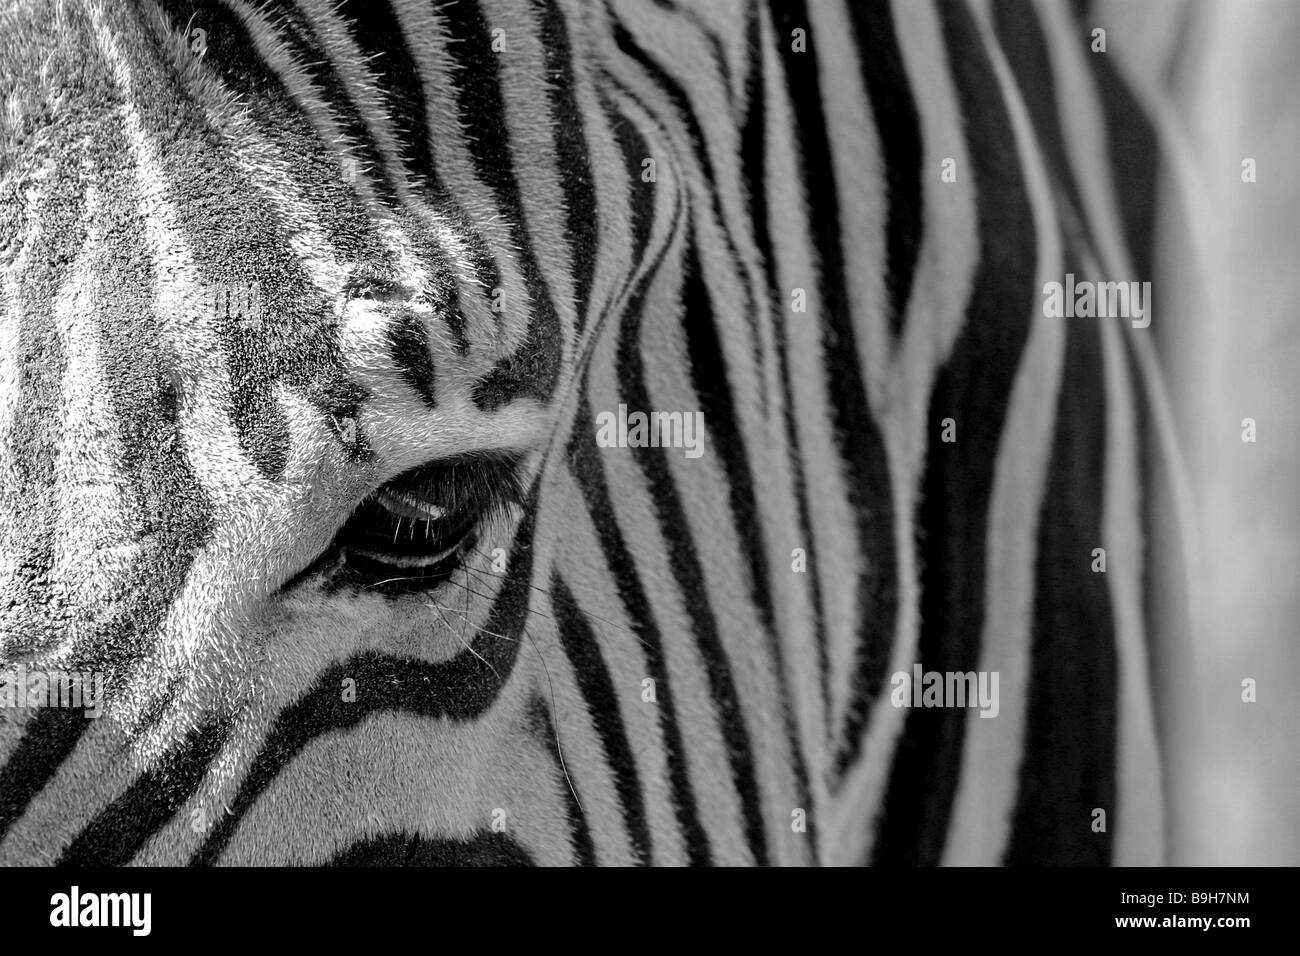 Testa di Zebra eye close-up Foto Stock